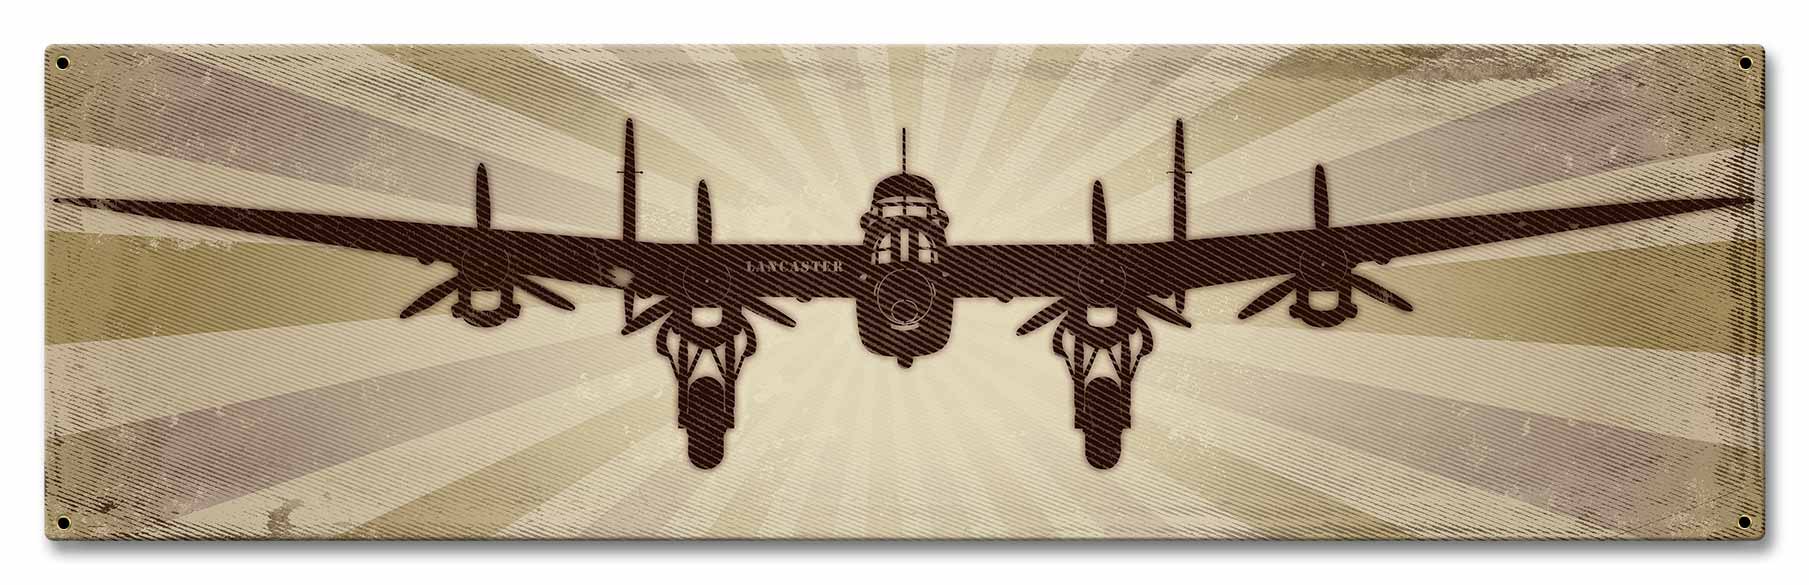 Planes Lancaster